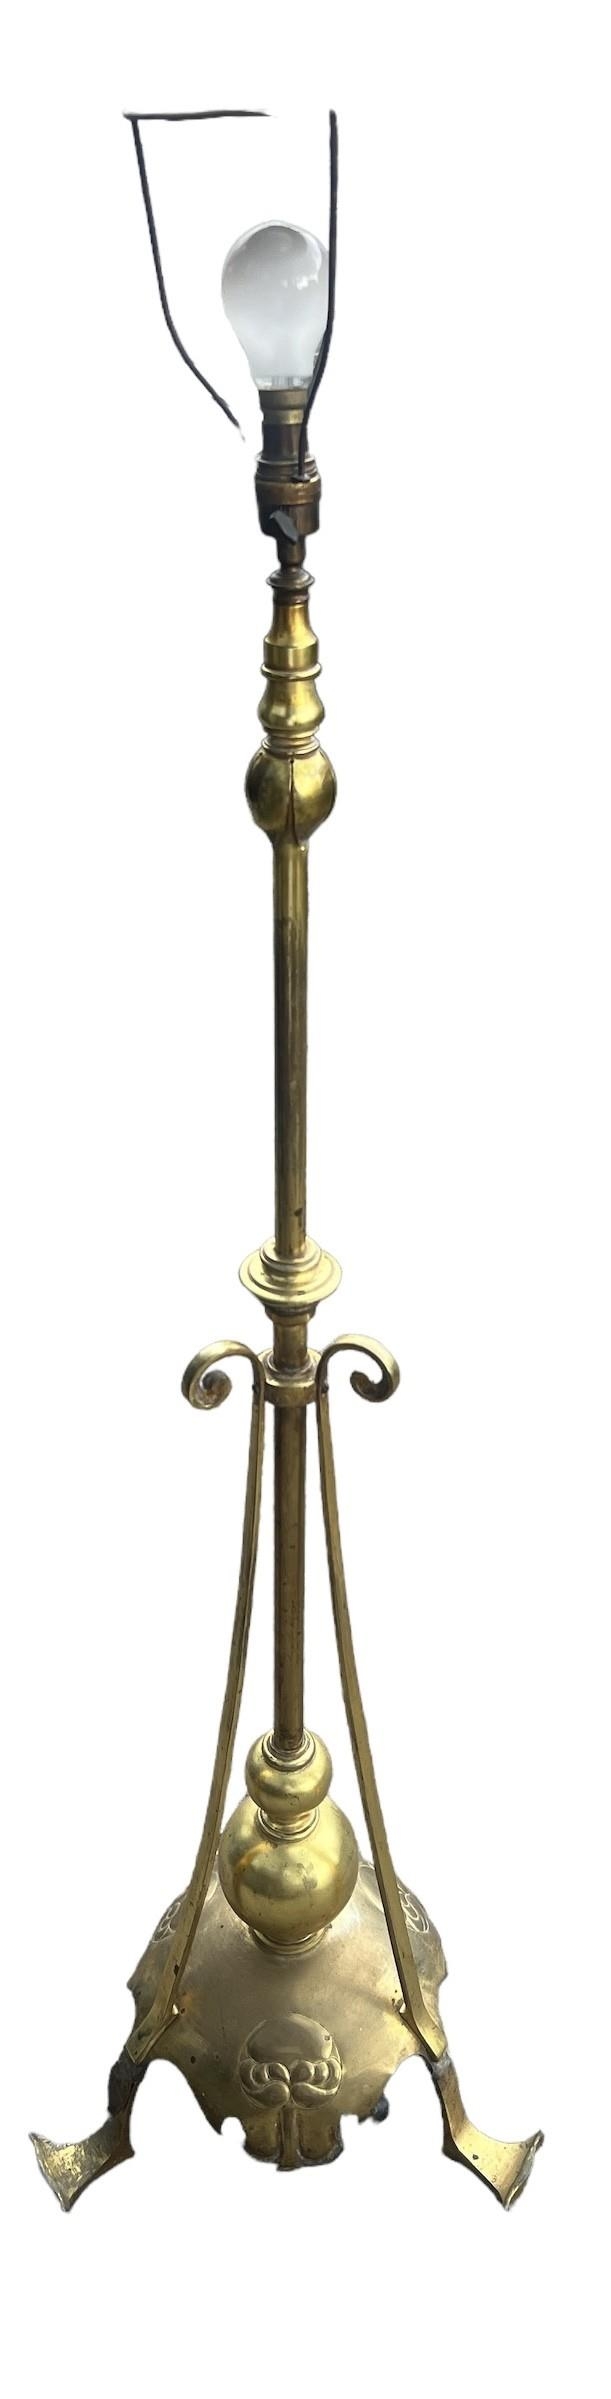 A VICTORIAN ART NOUVEAU BRASS FLOOR STANDING LAMP. (h 167cm)